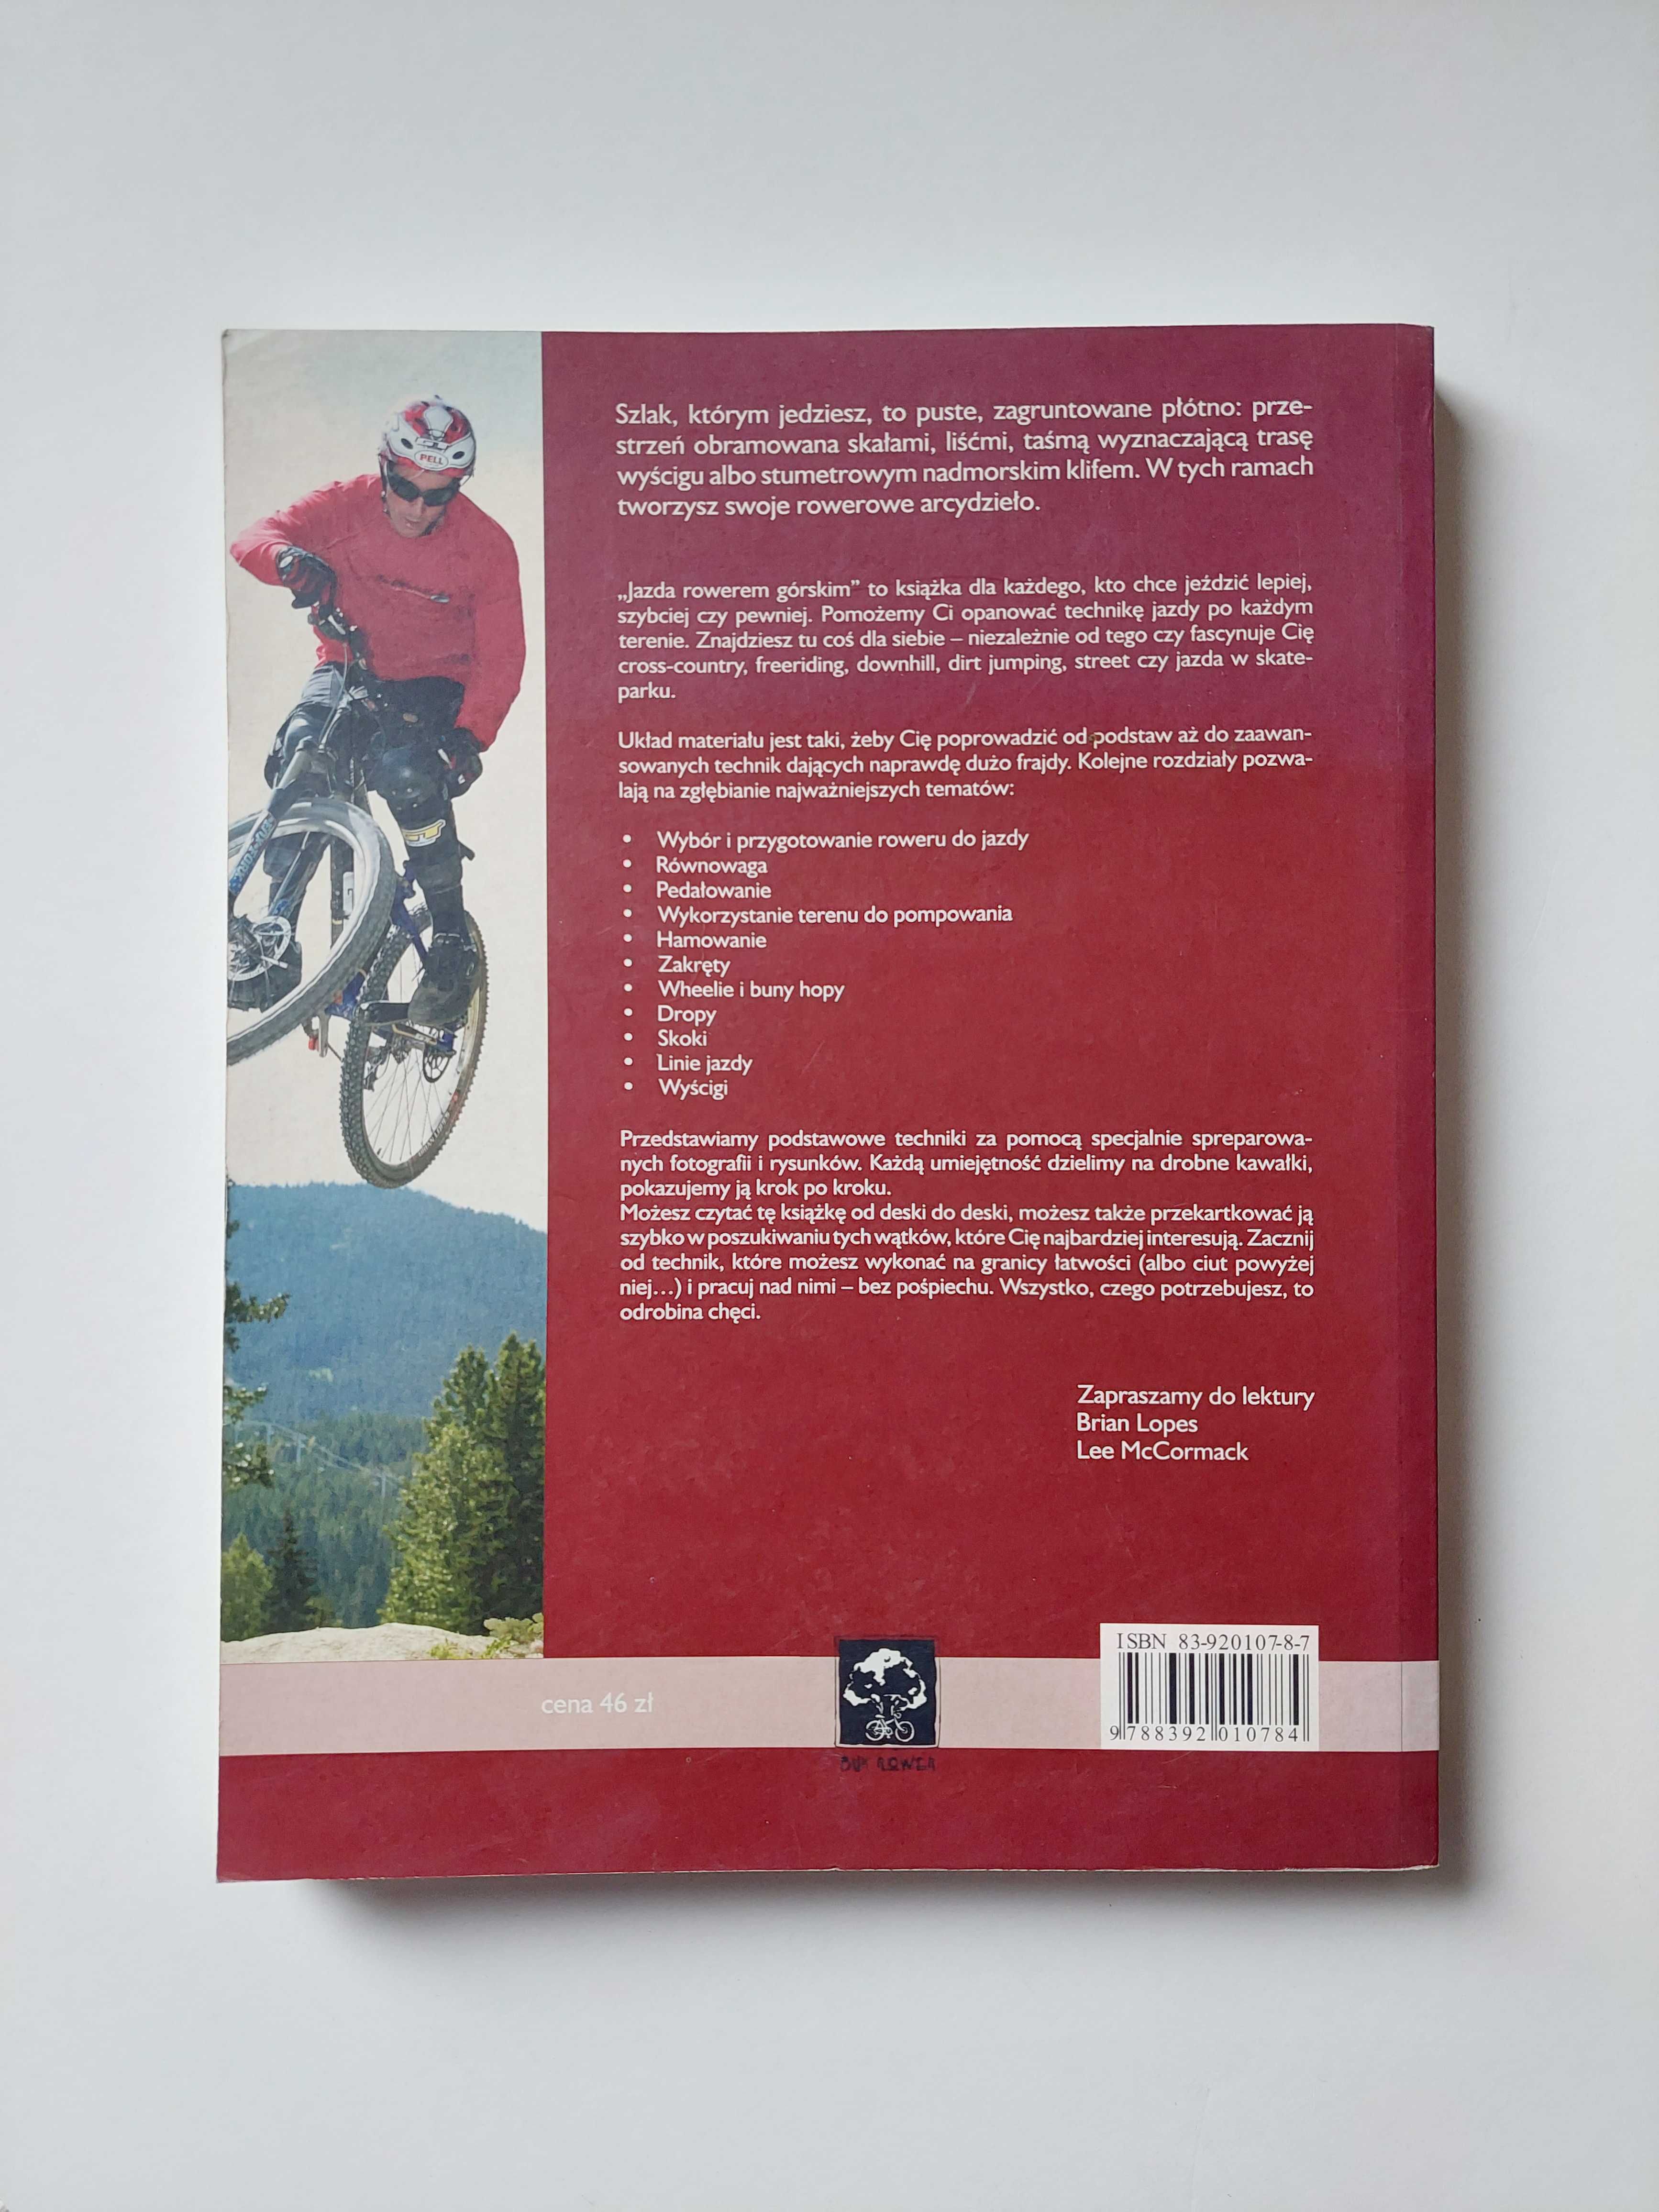 Jazda rowerem górskim — Brian Lopes, Lee McCormack